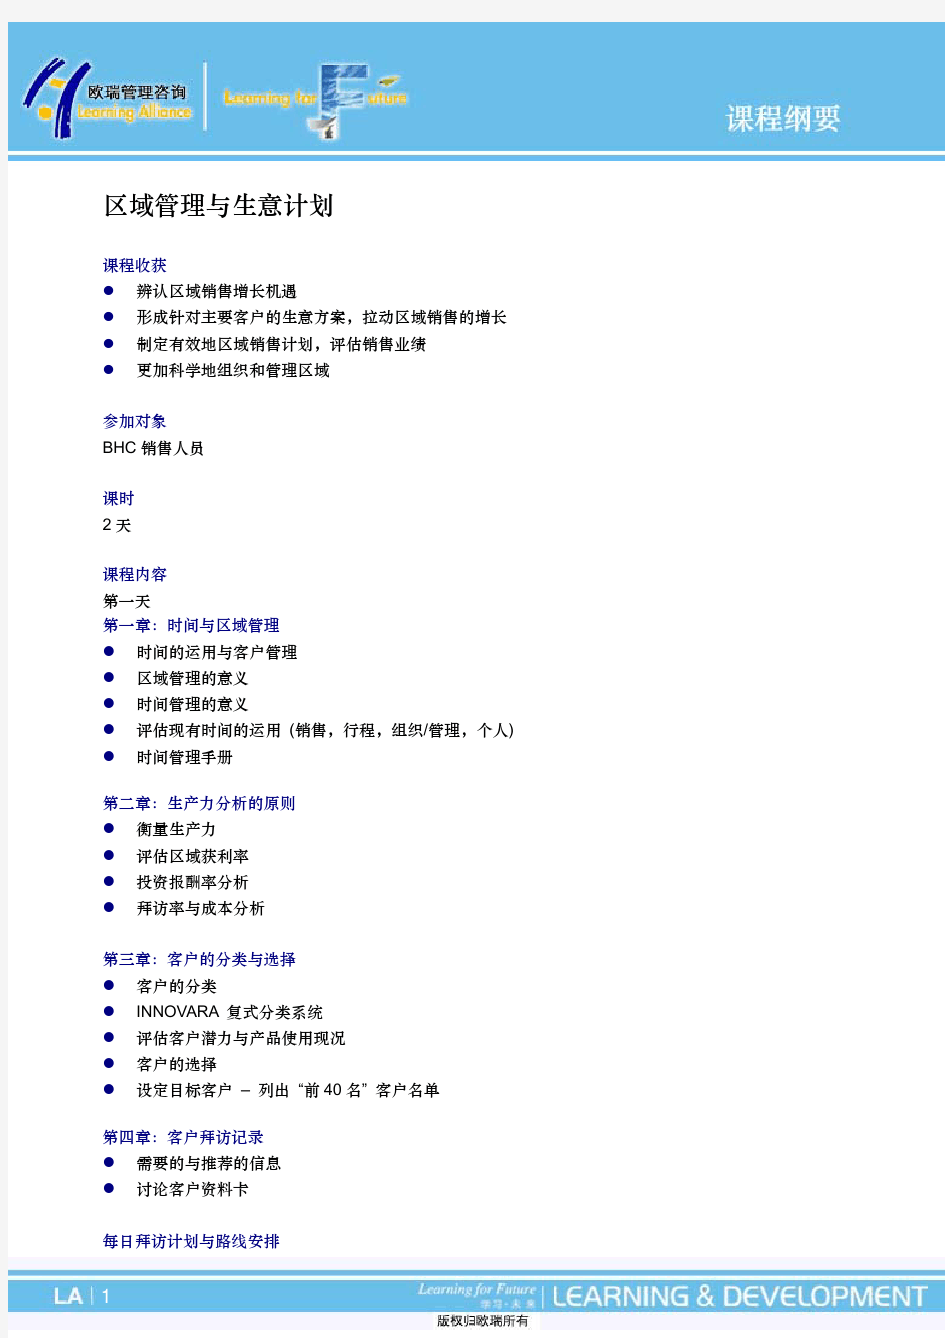 区域管理与生意计划(中文)